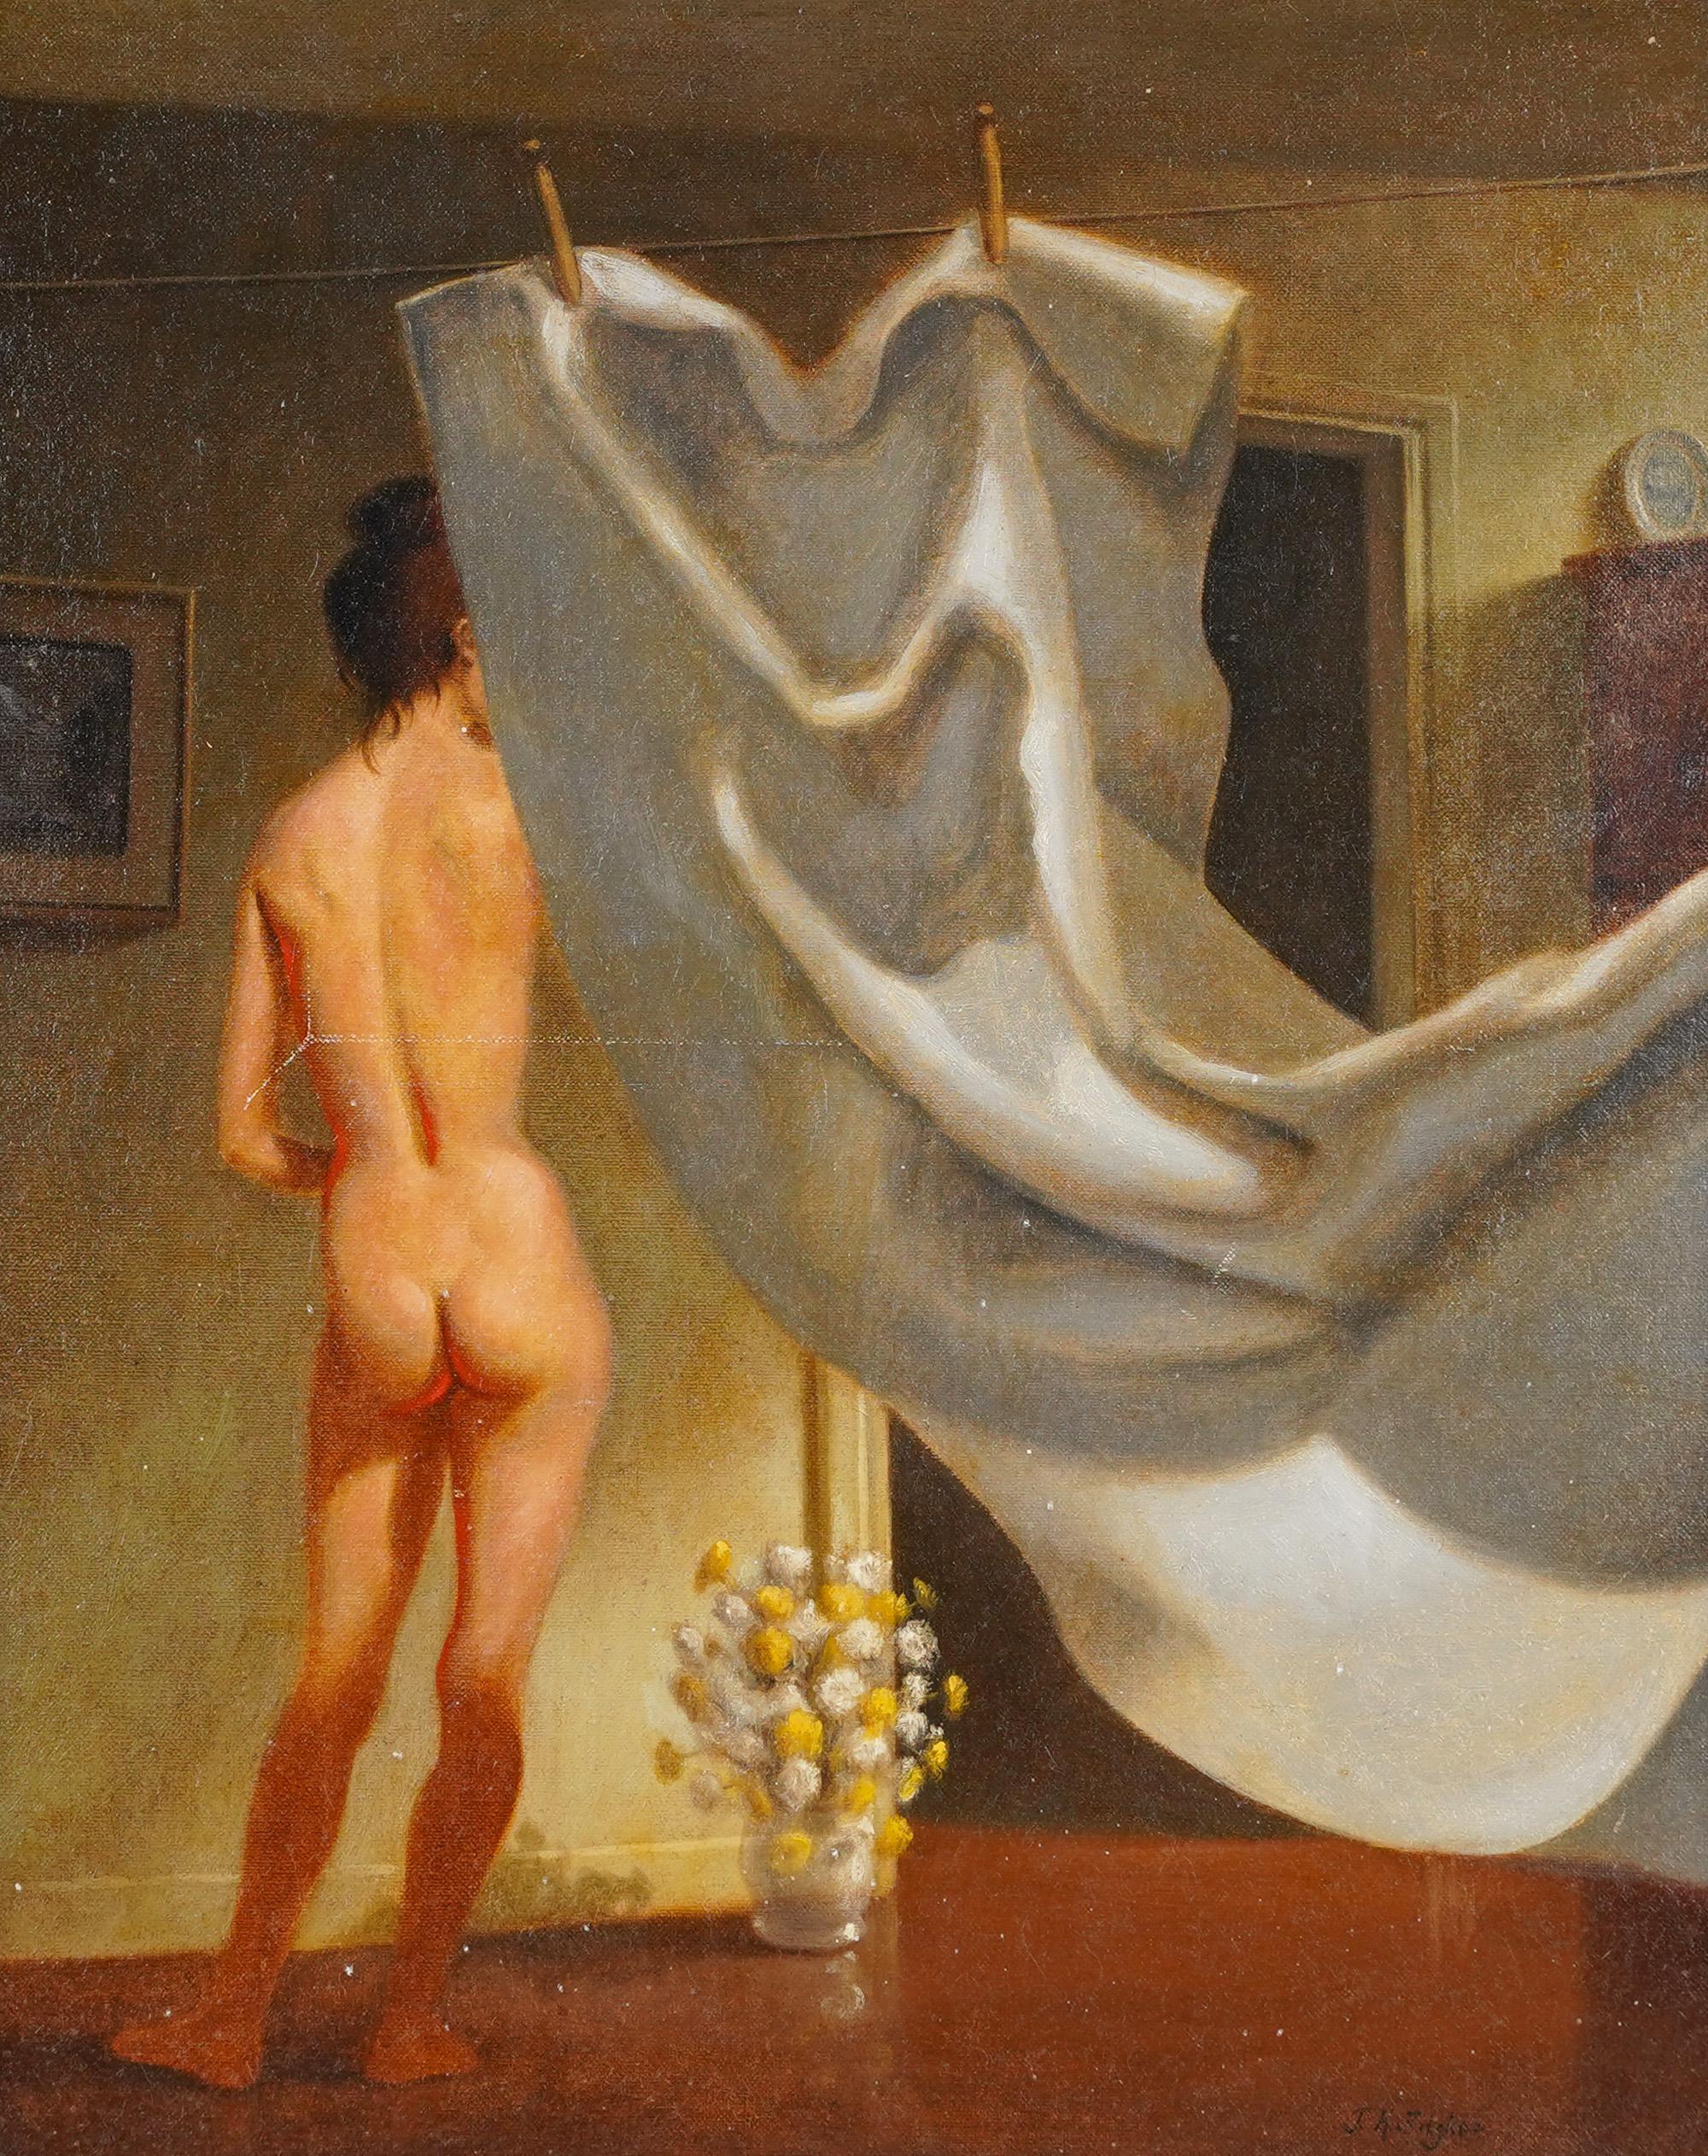 Amerikanische Schule, signiert Trompe L'Oeil, nacktes Frauenporträt, Ölgemälde (Braun), Interior Painting, von Unknown